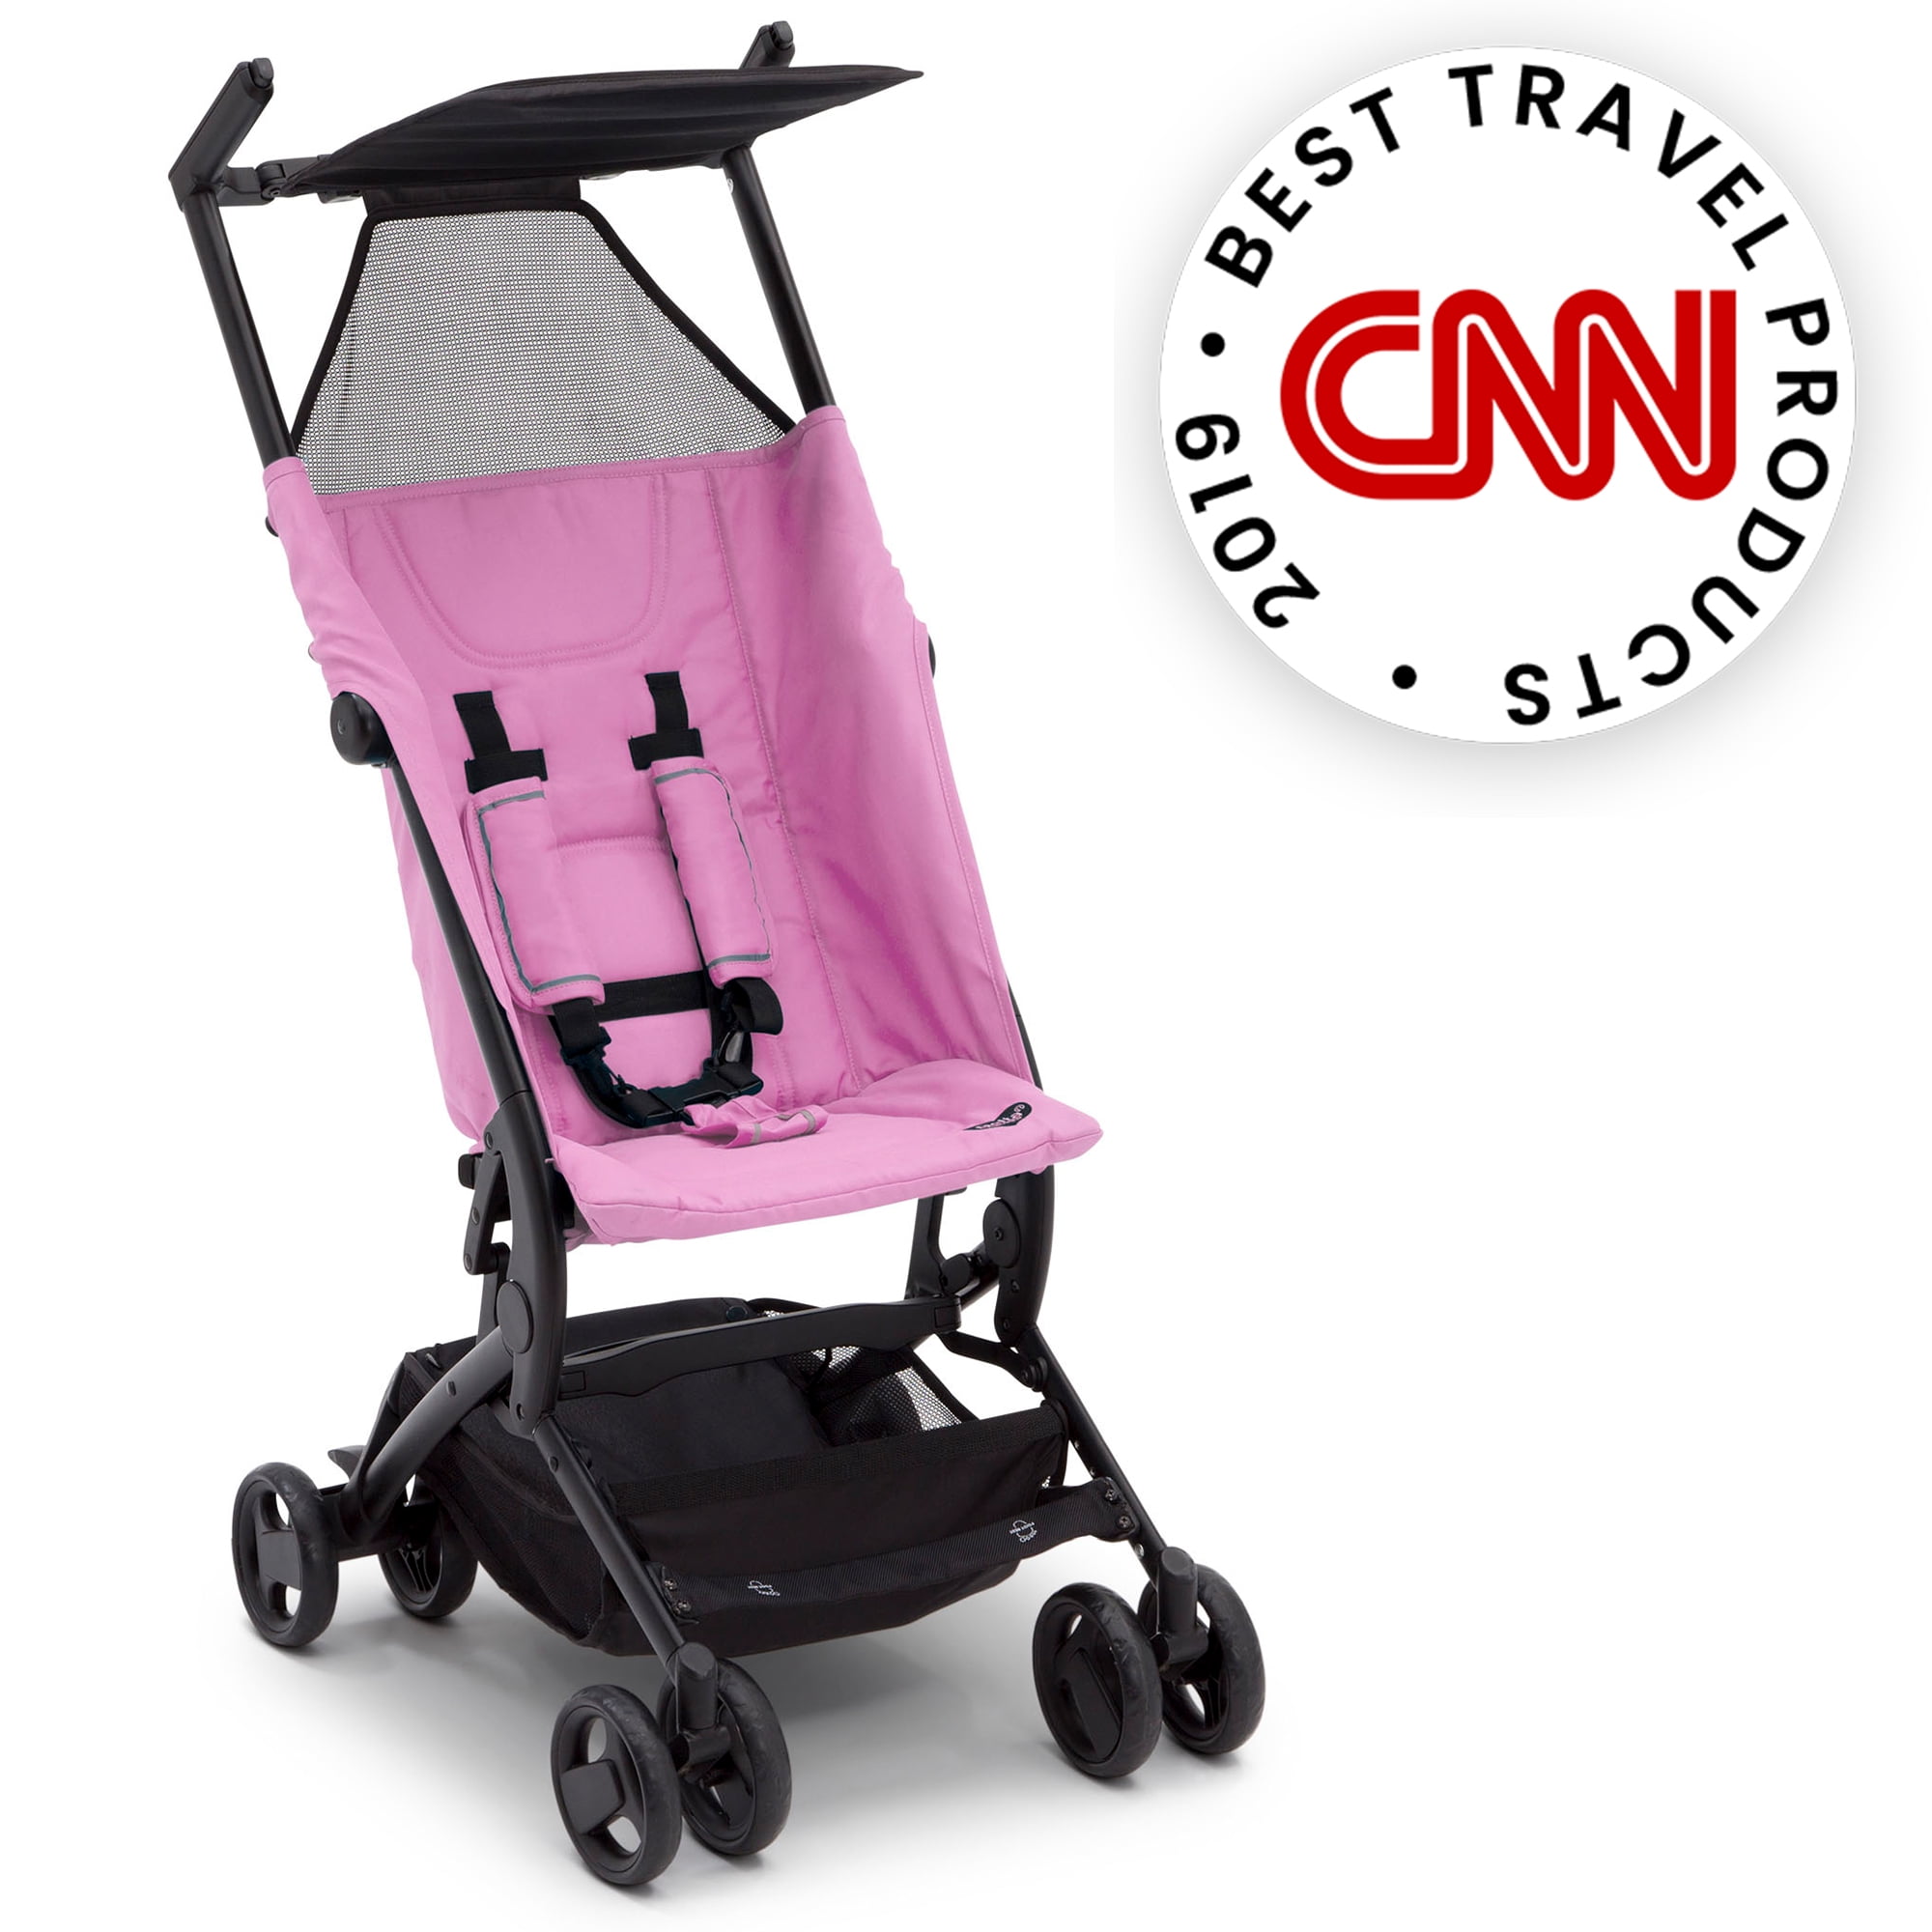 cheap pink stroller